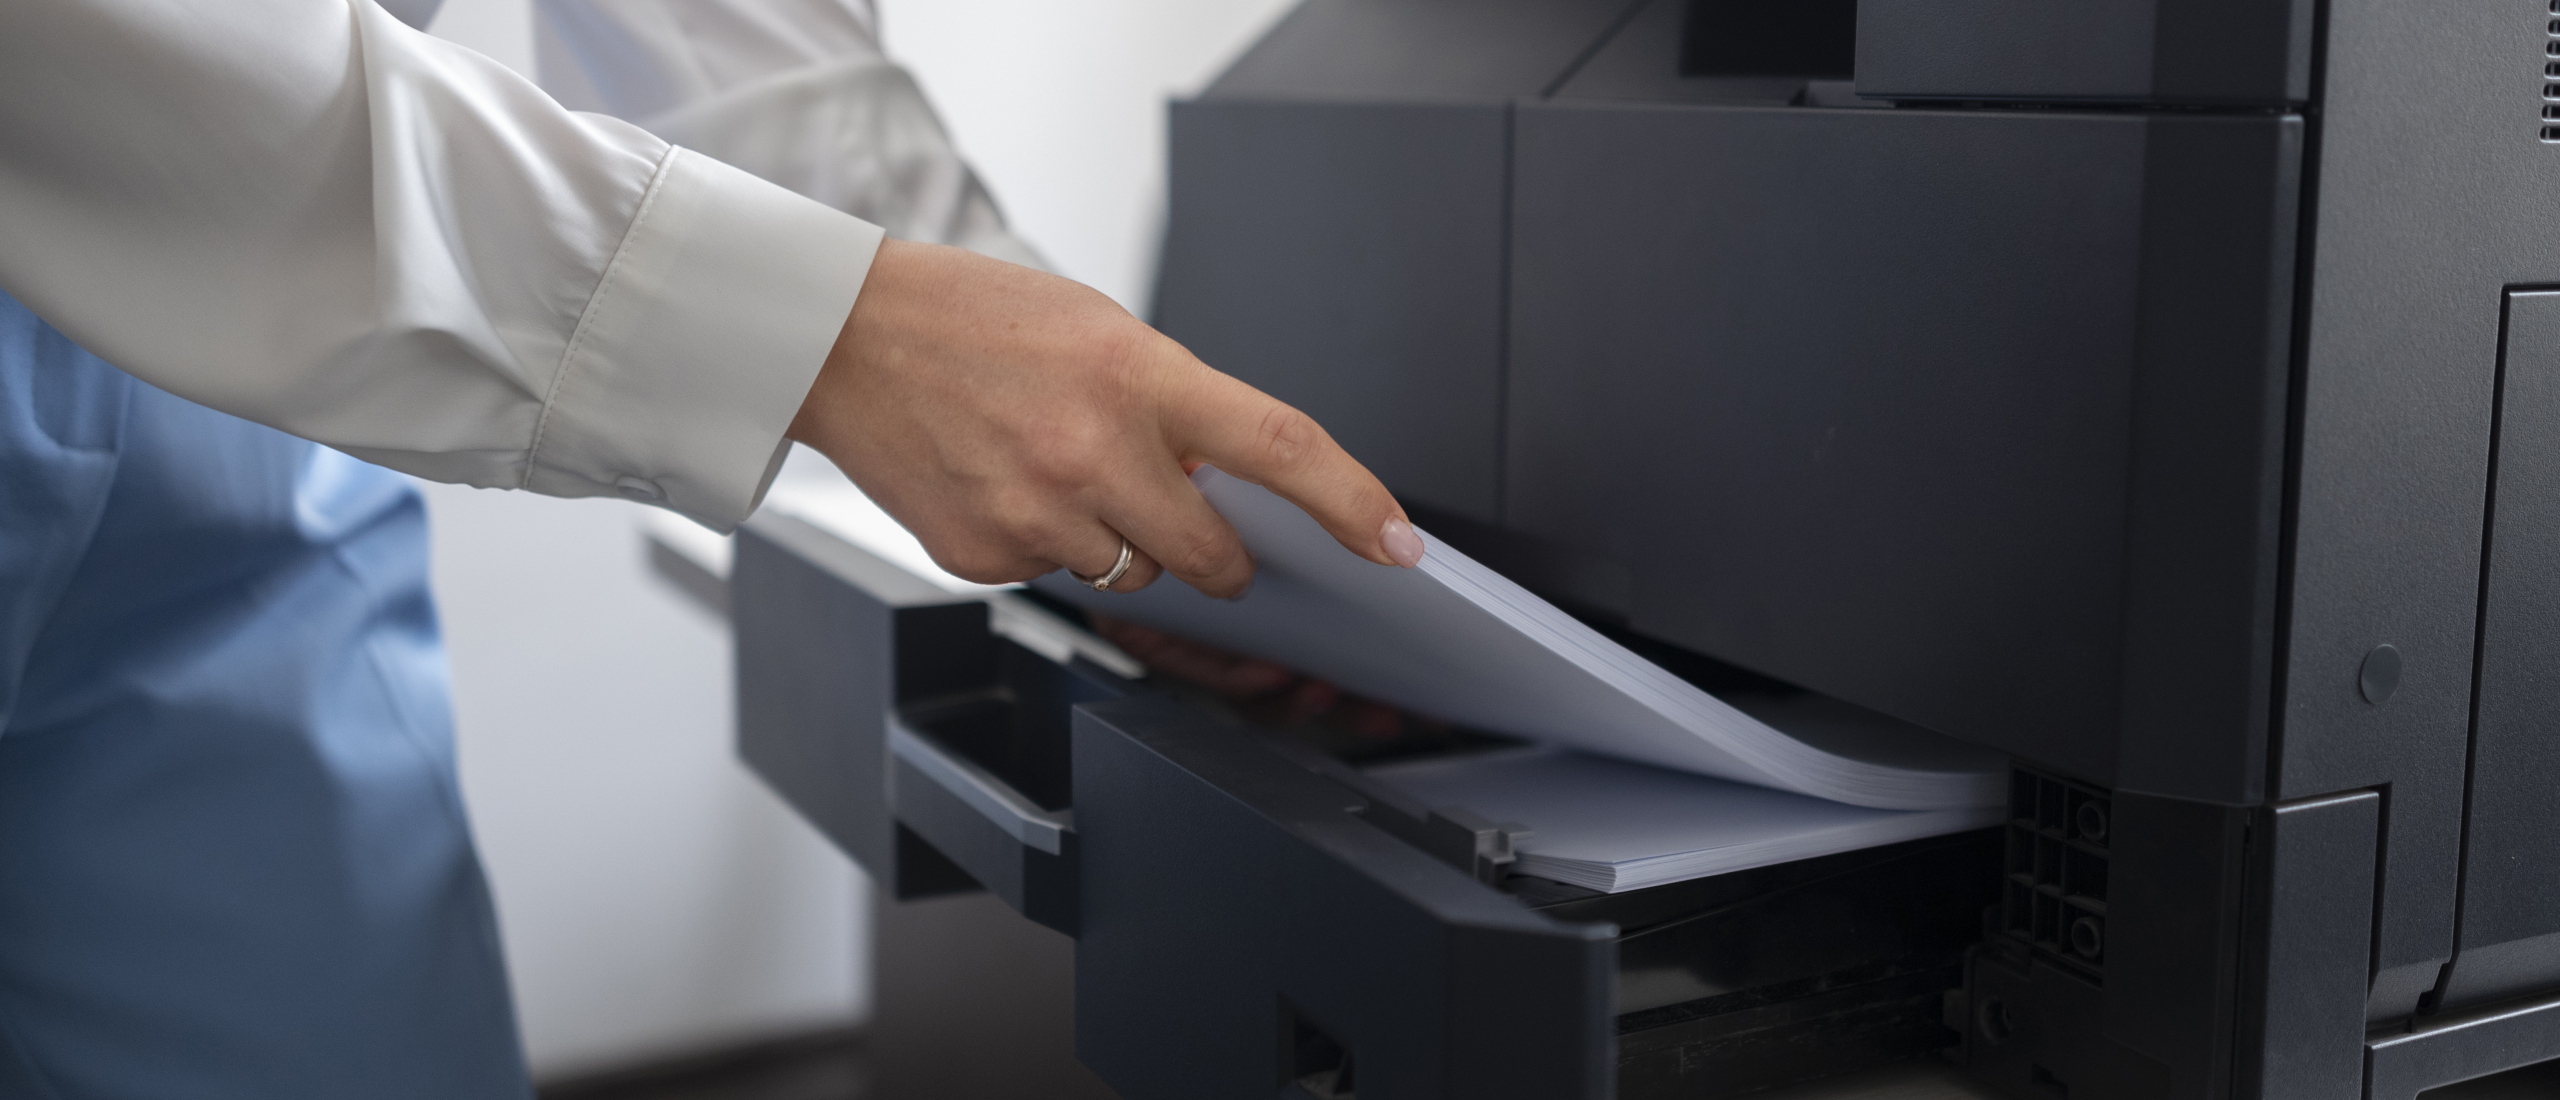 Hoe scannen met een HP Printer naar je computer? Printerservice legt uit